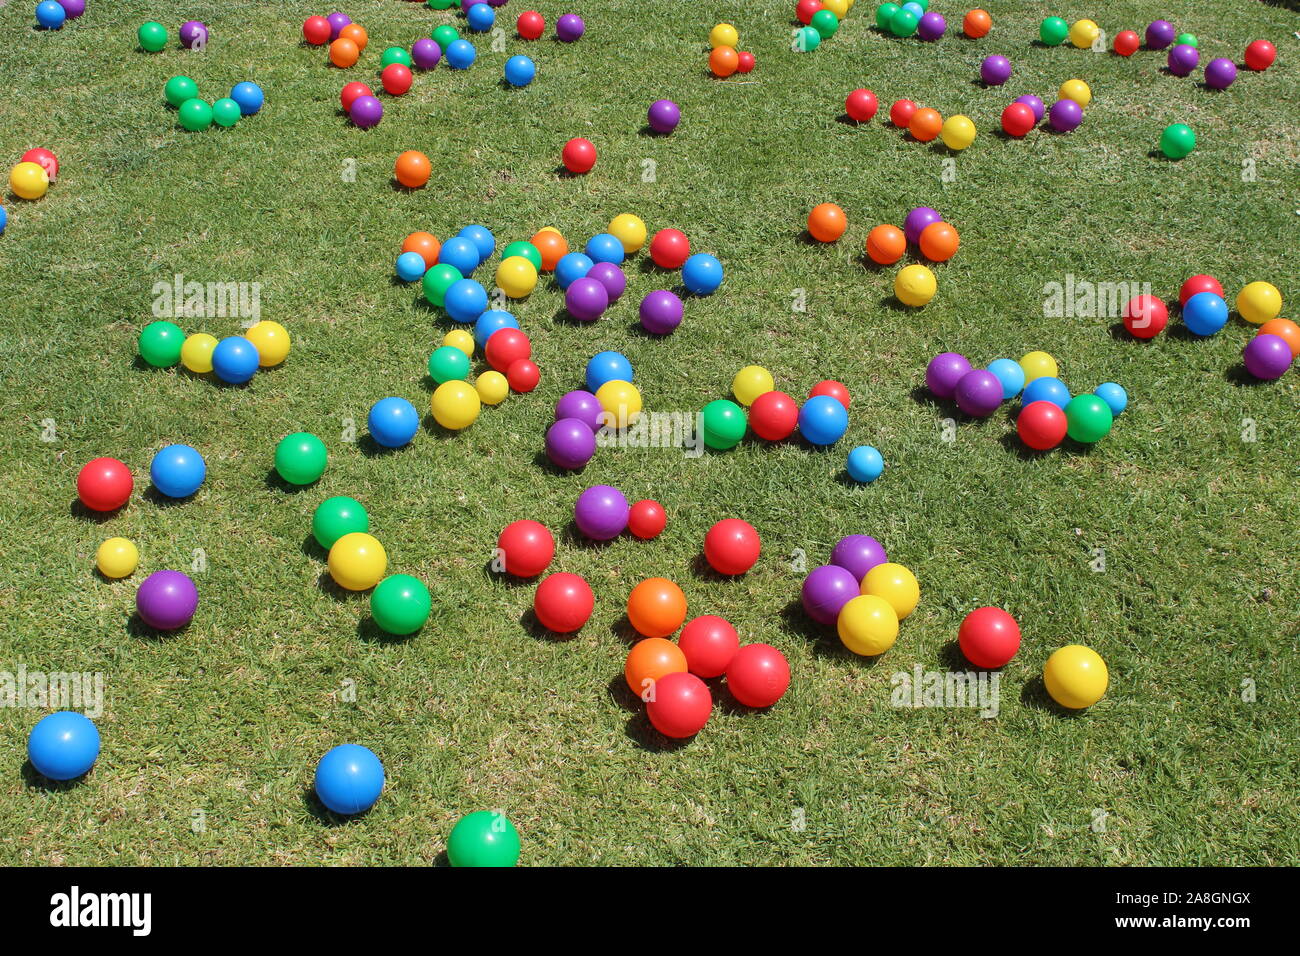 Die Kinder geschickt arrangiert die farbigen Kugeln die molekulare Struktur der ein Einhorn zu vertreten. Stockfoto